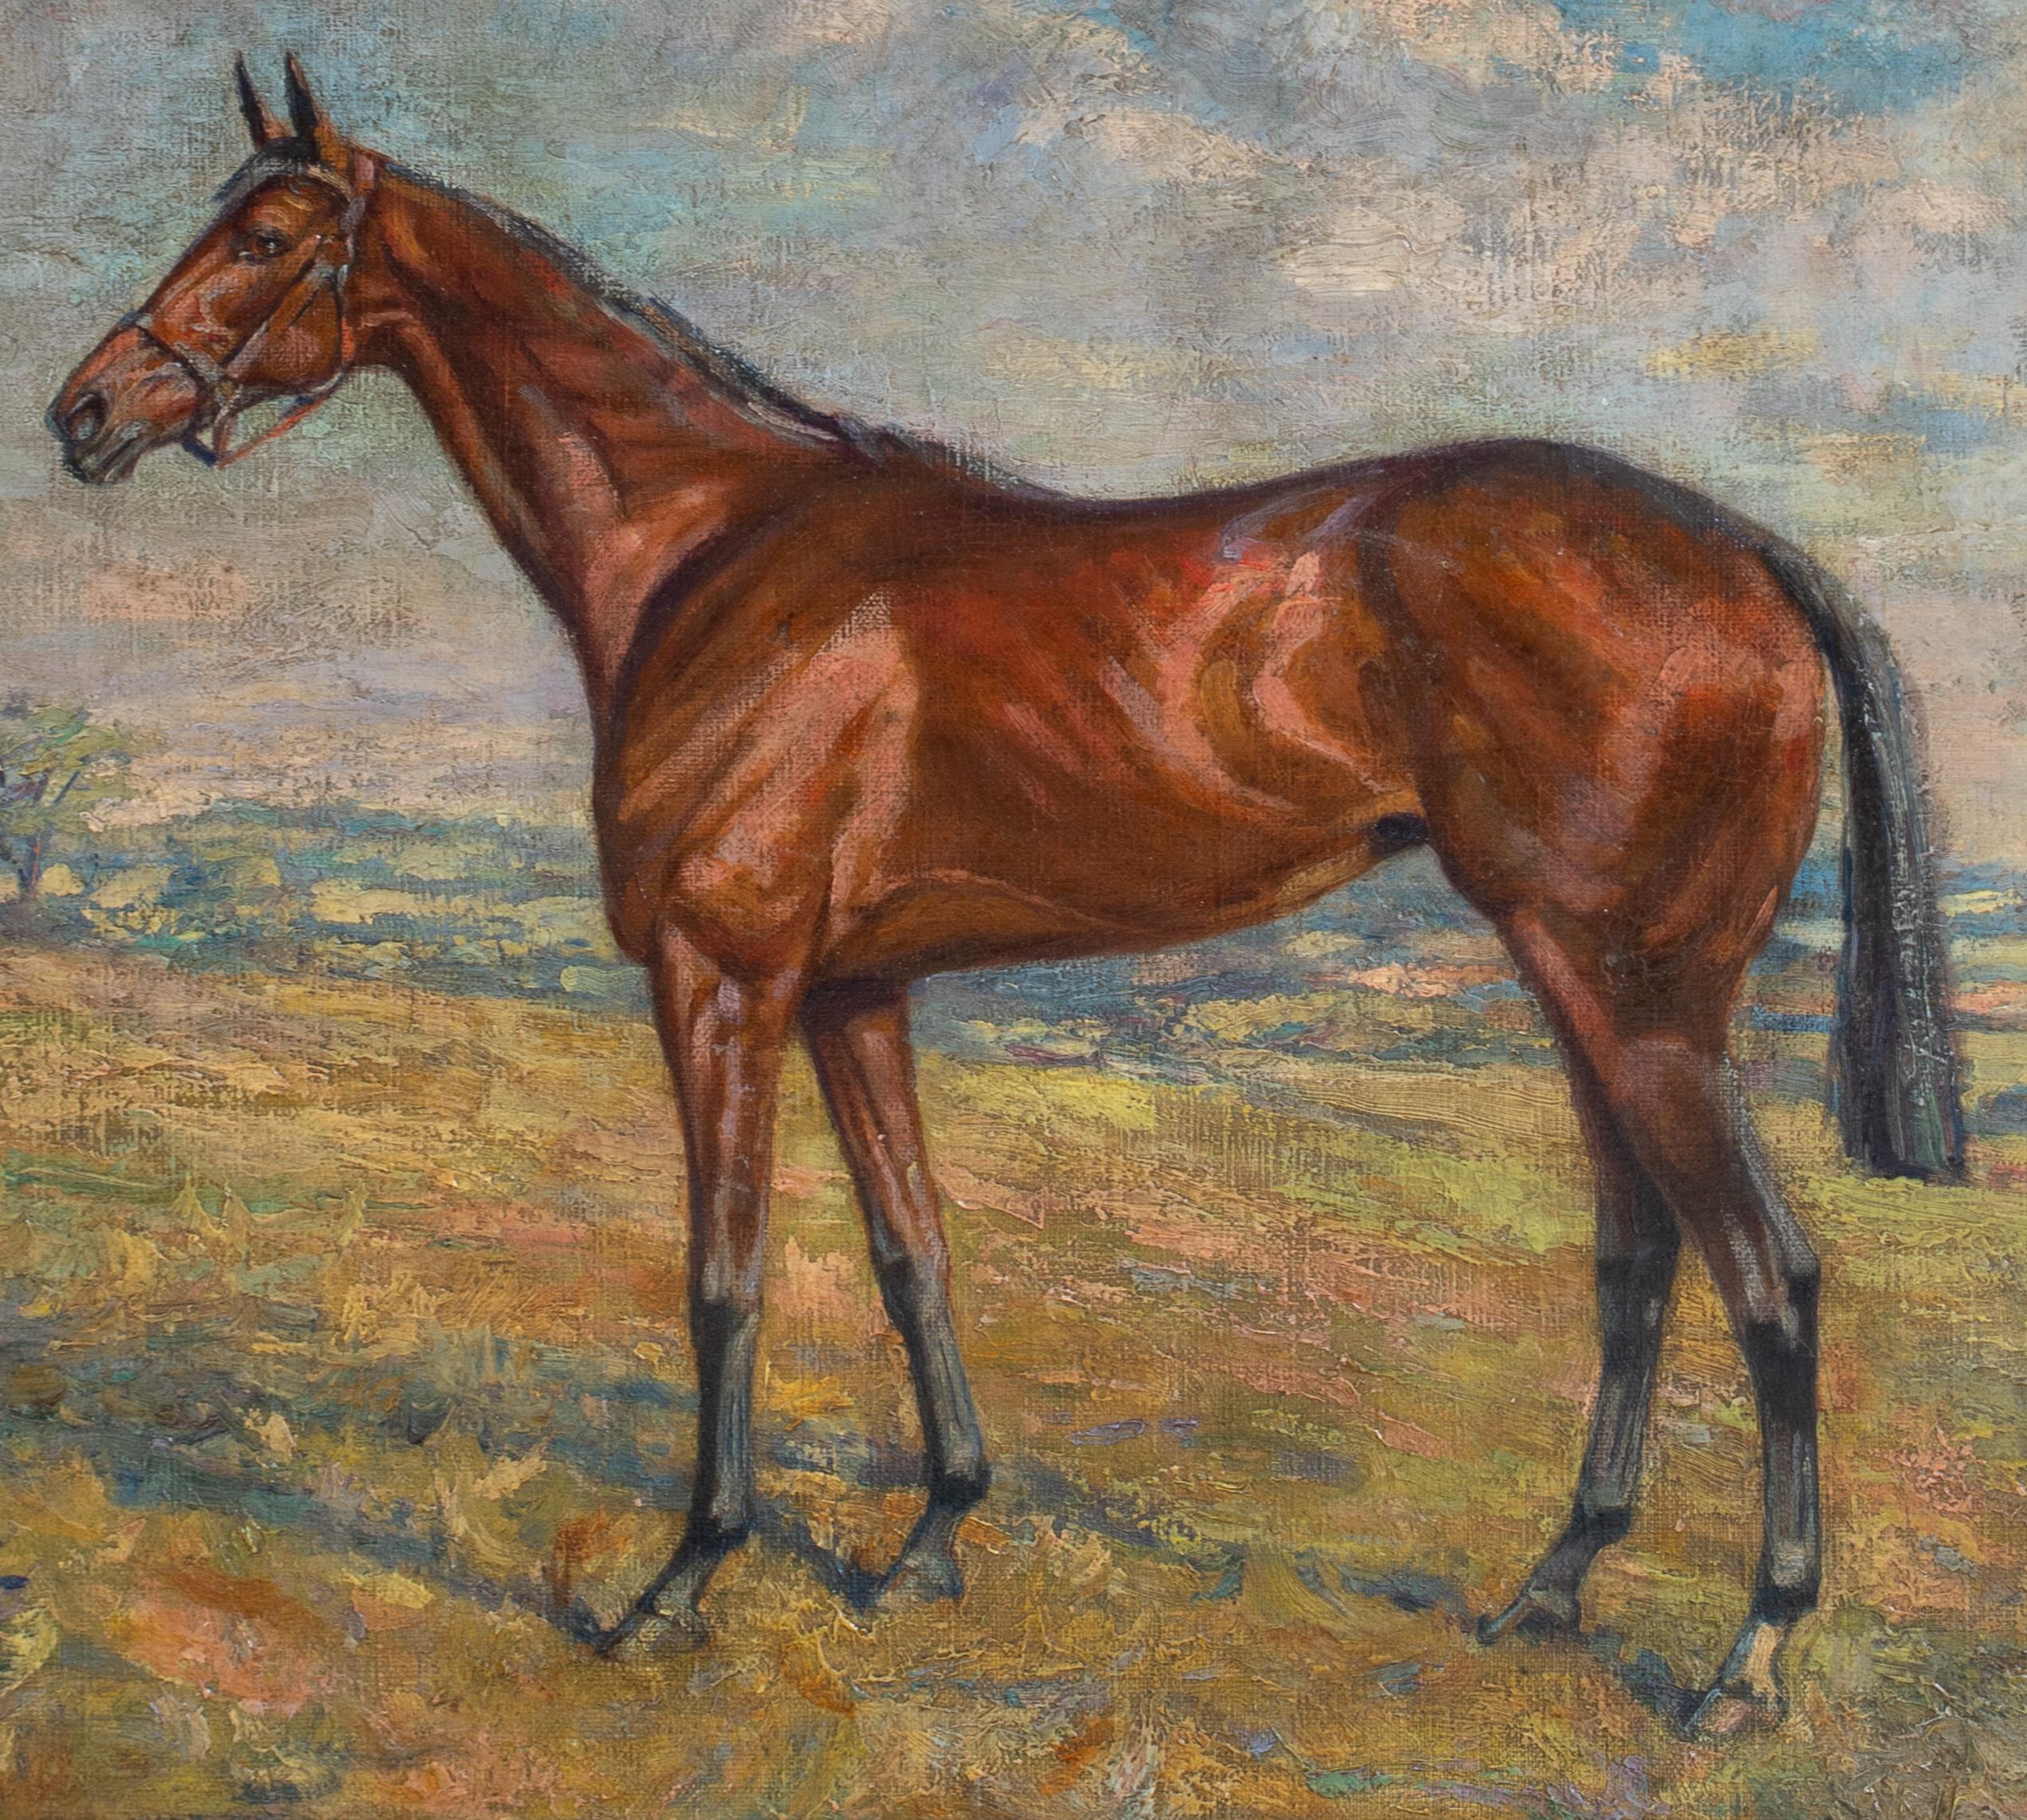 Portrait Of A Racehorse 